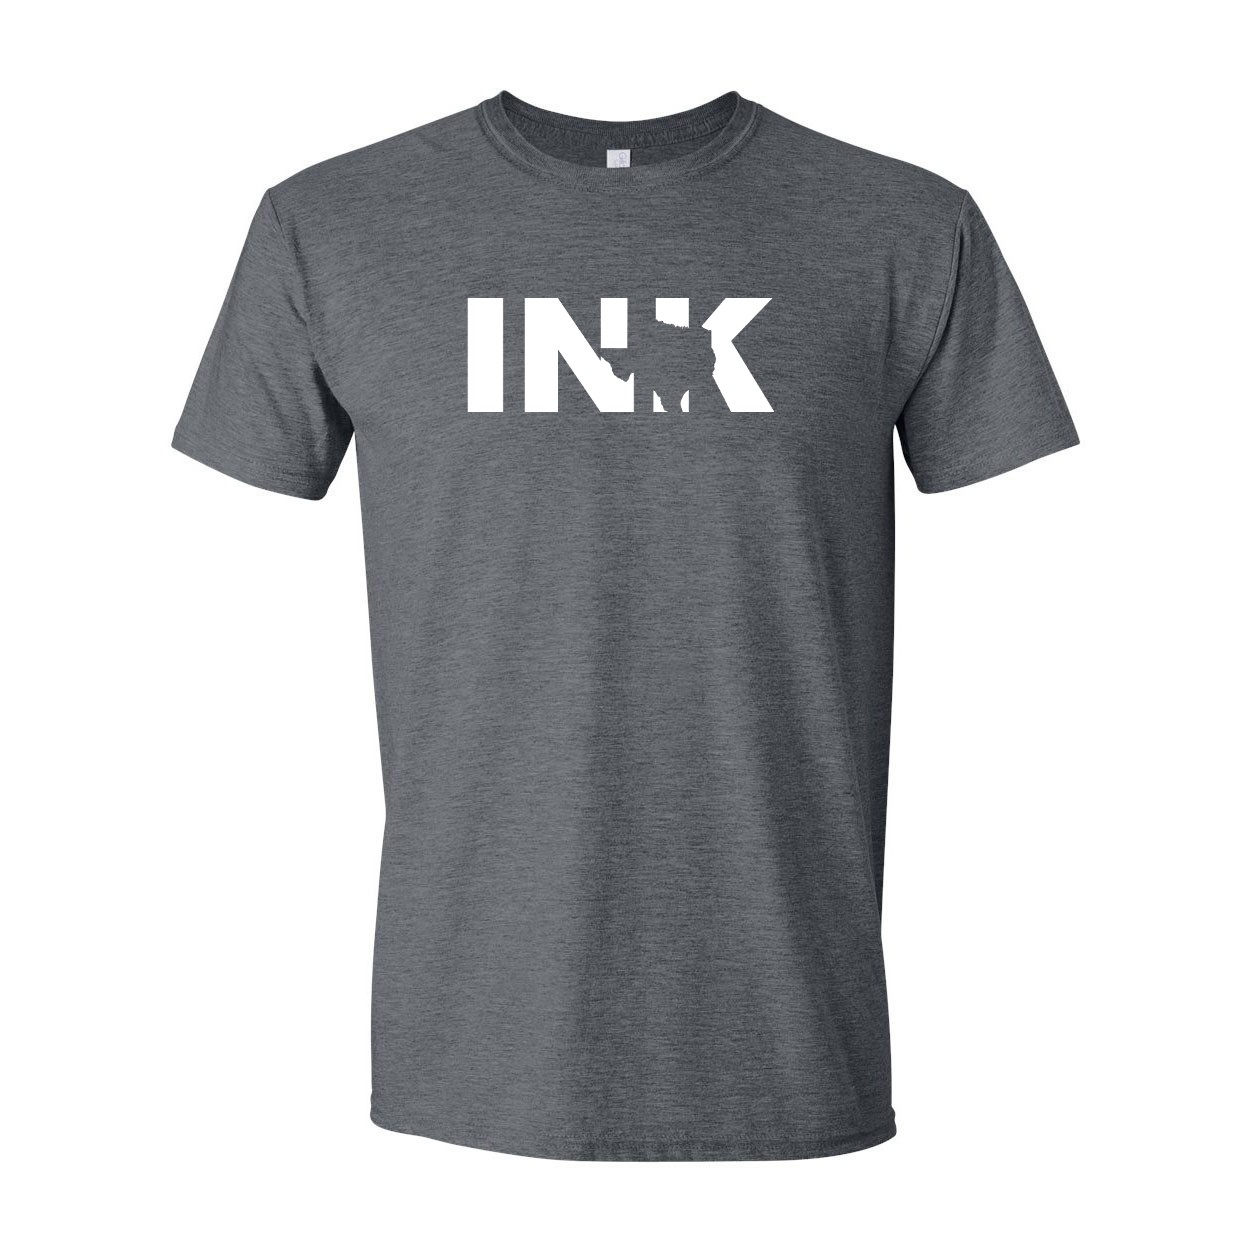 Ink Texas Classic T-Shirt Dark Heather Gray (White Logo)